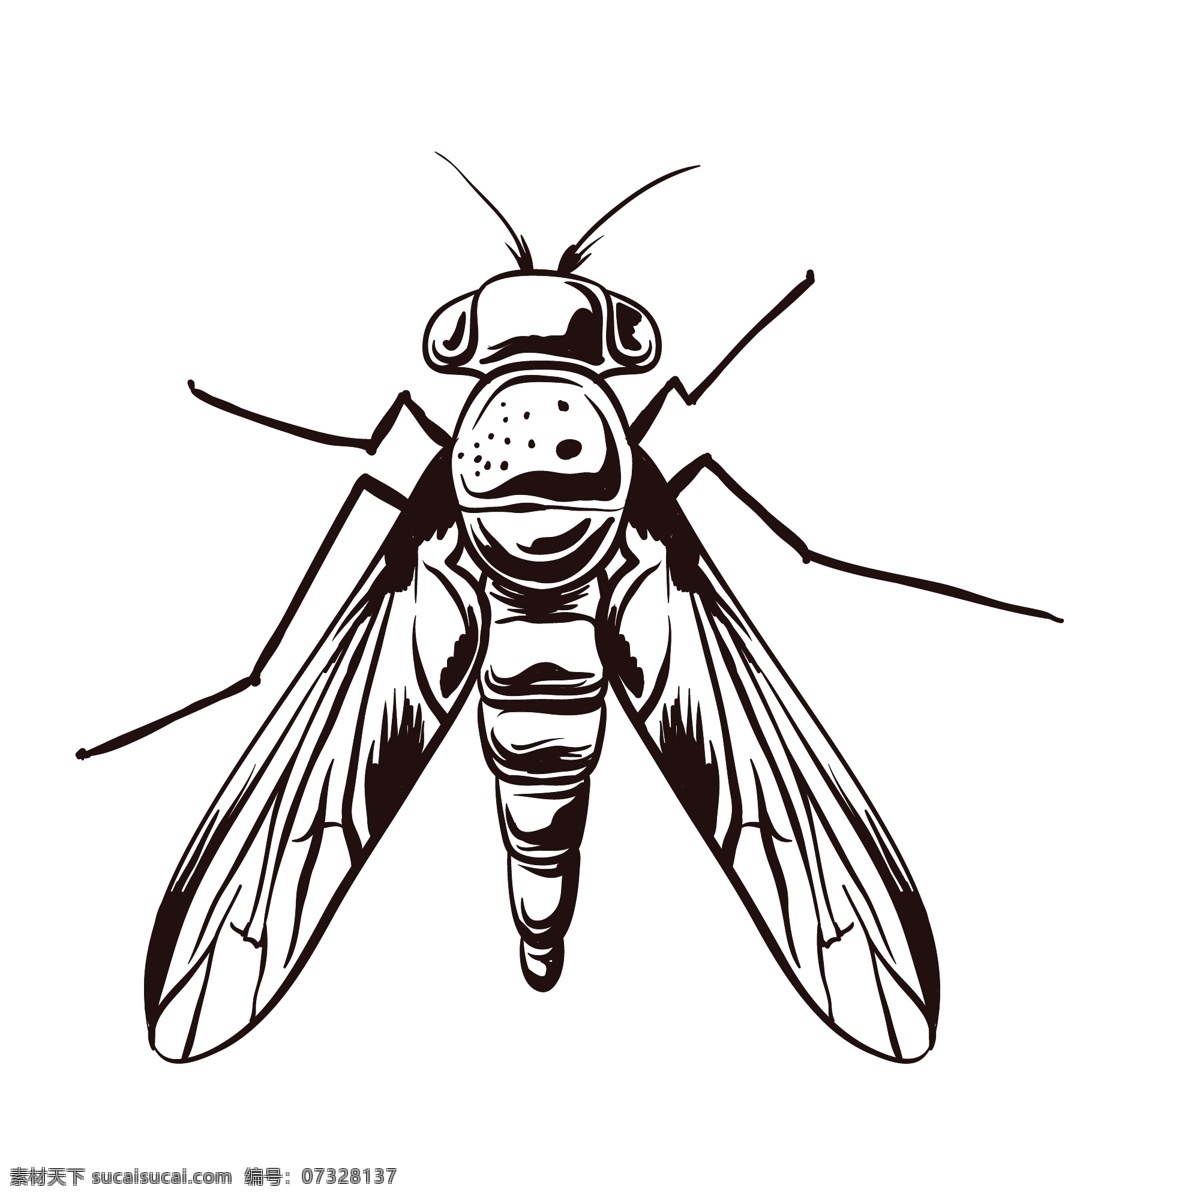 素描绘画昆虫 简笔绘画 线条 纯色 昆虫 素描 蝴蝶 蜻蜓 插画 绘画 图案 文化艺术 绘画书法